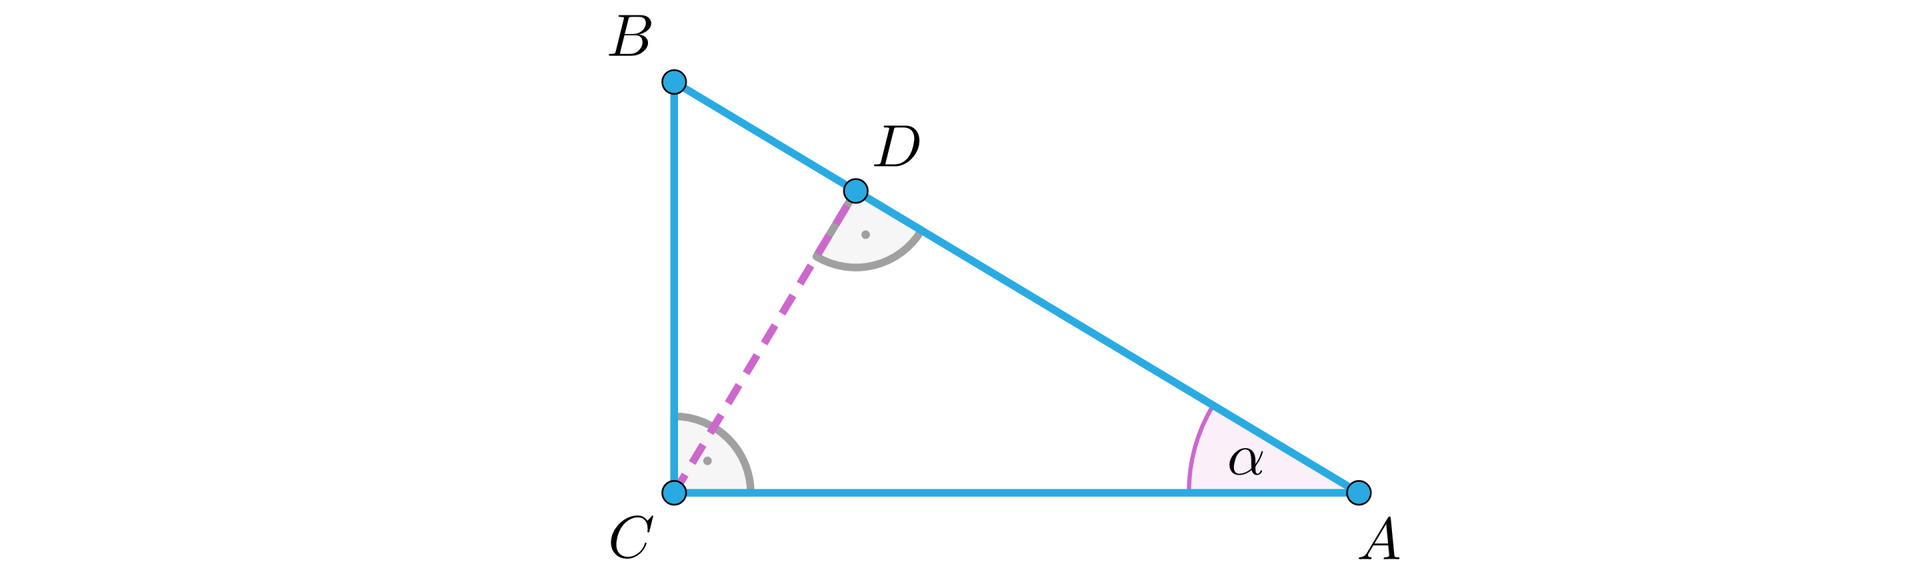 Ilustracja przedstawia trójkąt prostokątny A B C, leżący na przyprostokątnej A C. Kąt prosty zaznaczony jest przy wierzchołku C, z którego została poprowadzona wysokość upuszczona na przeciwprostokątną A B w punkcie D. Zaznaczony został także kąt alfa przy wierzchołku  A.